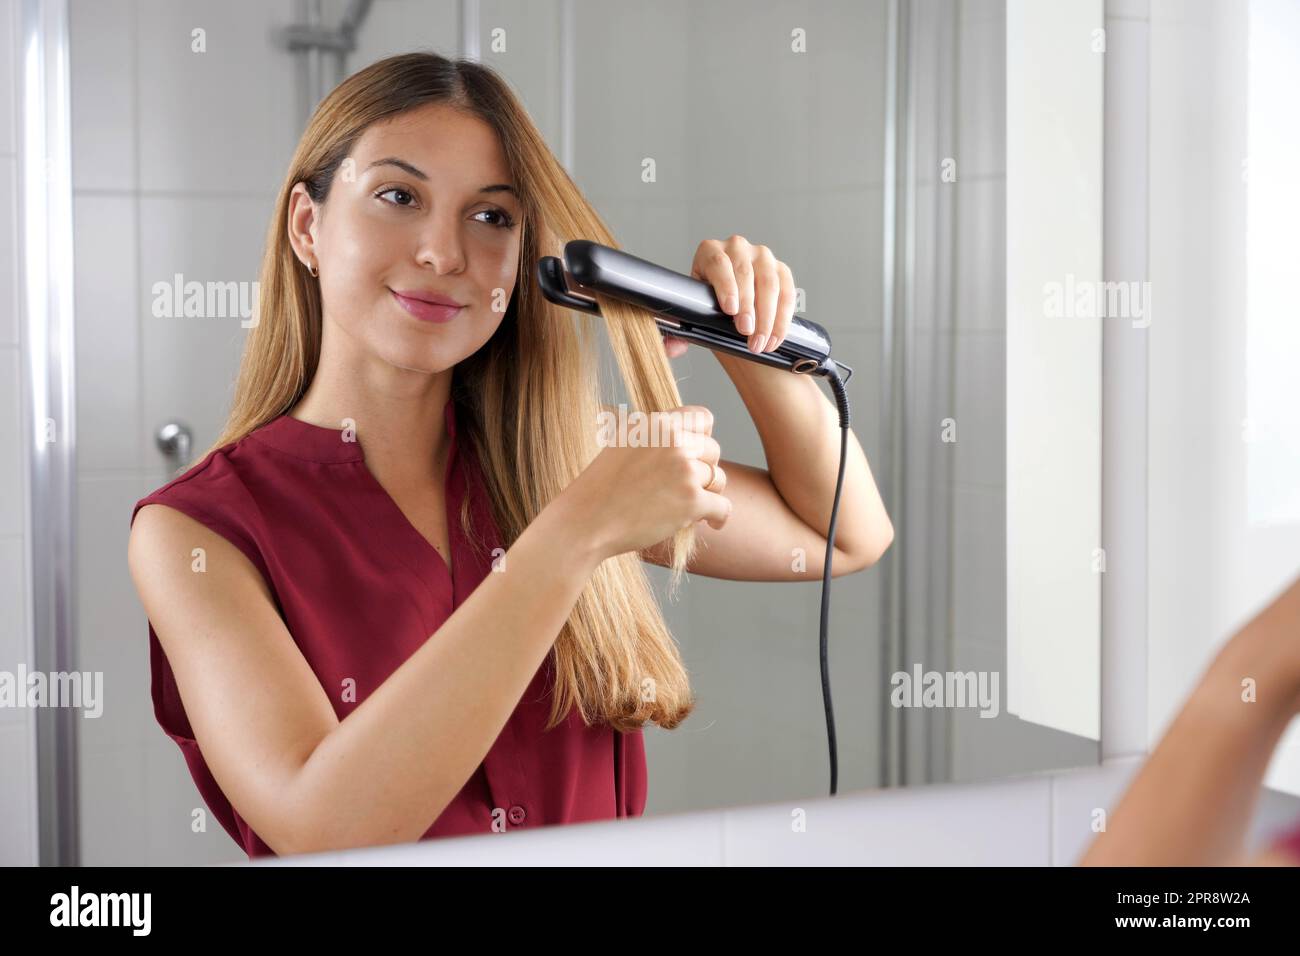 Jeune femme hispanique utilisant un lisseur à vapeur pour coiffer les cheveux dans le miroir de la salle de bains Banque D'Images